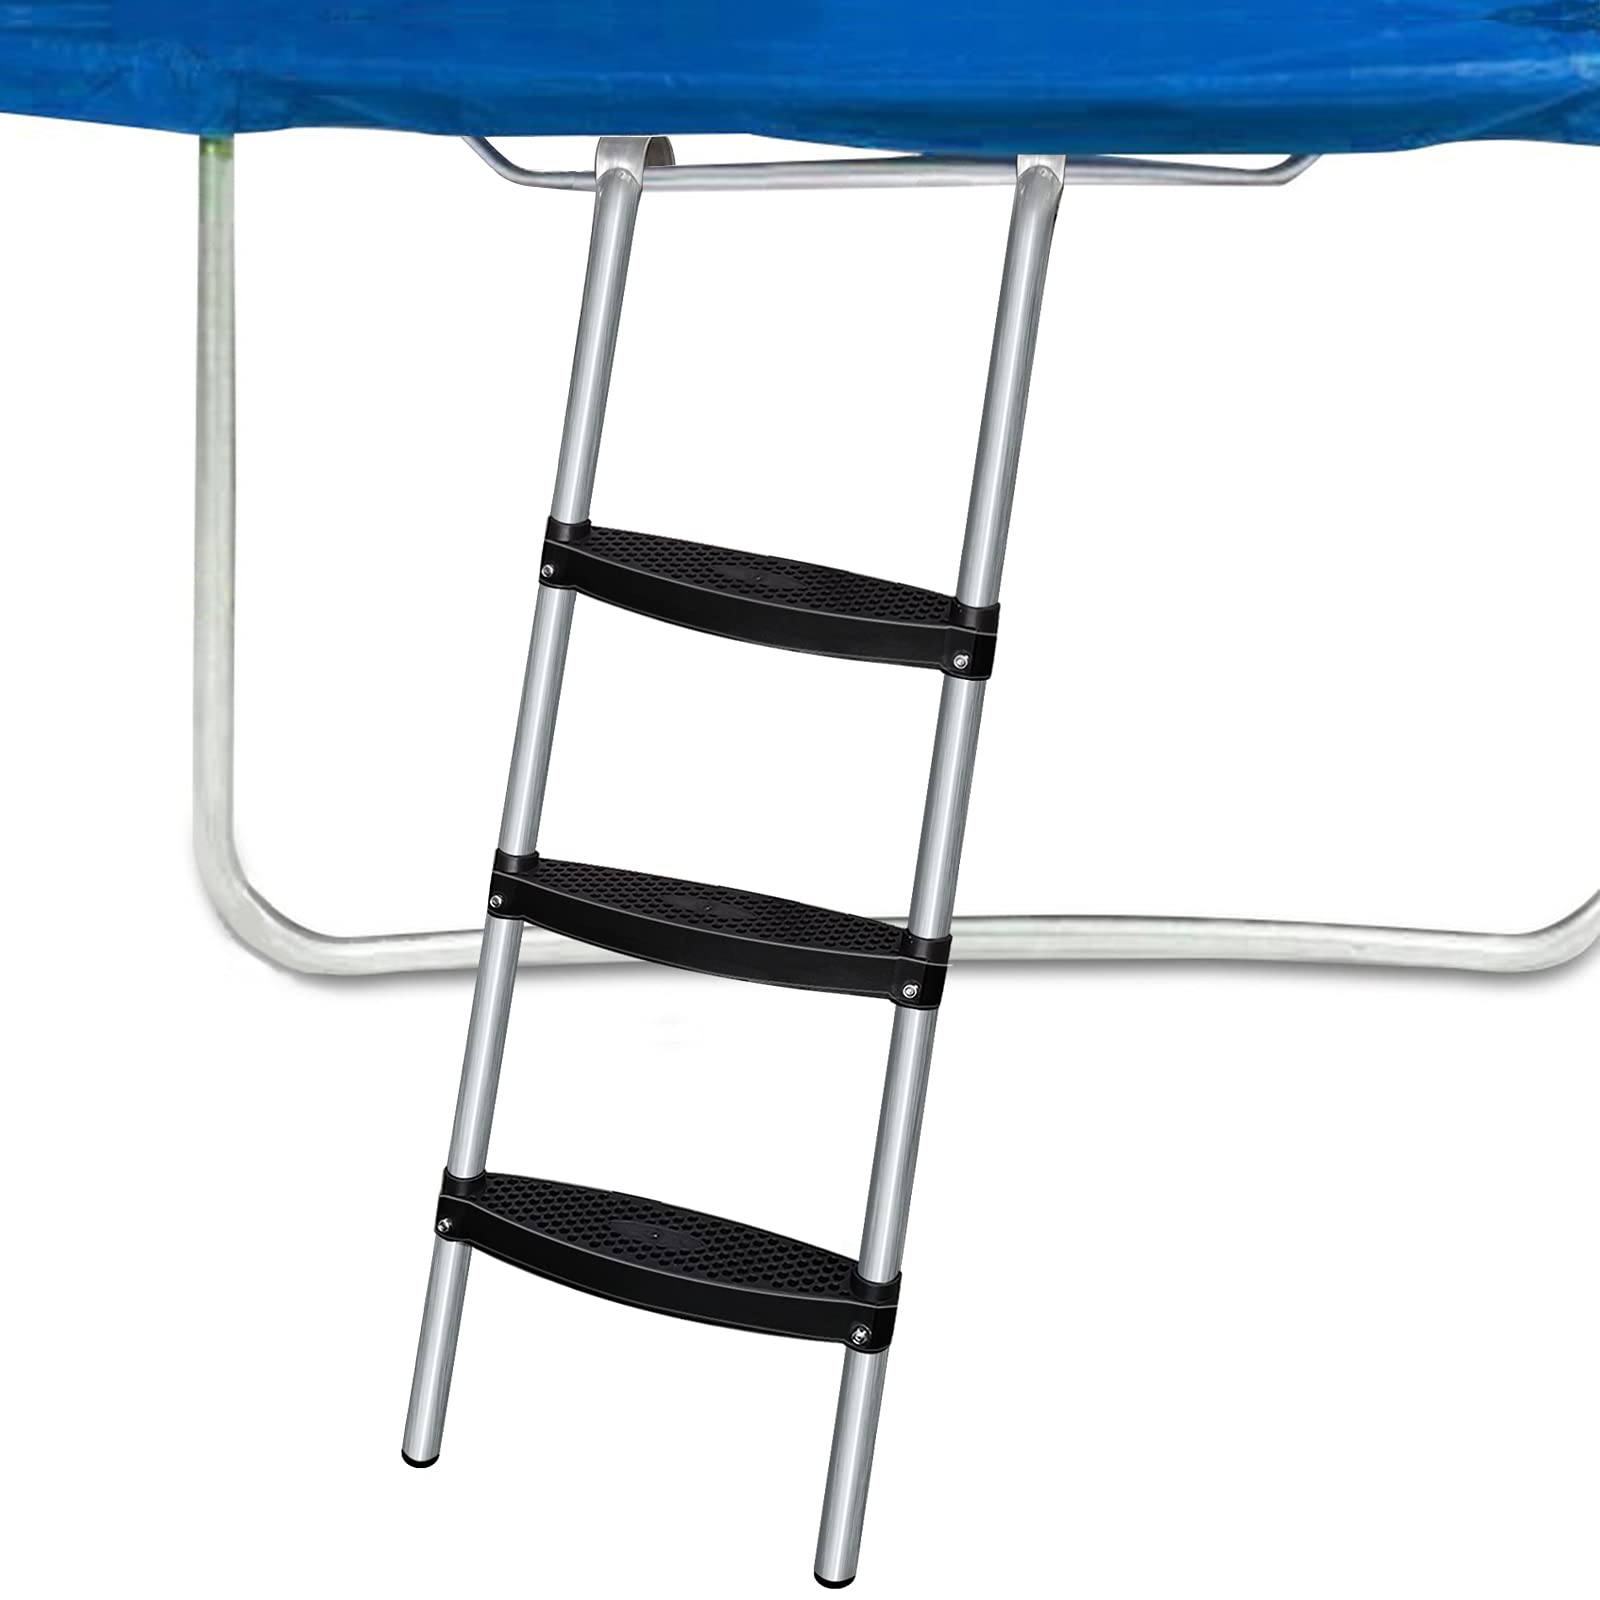 Rukars Trampoline Ladder, 3-Step Wide Universal Trampoline Ladder for Kids, Easy to Install Trampoline Accessories Trampoline St